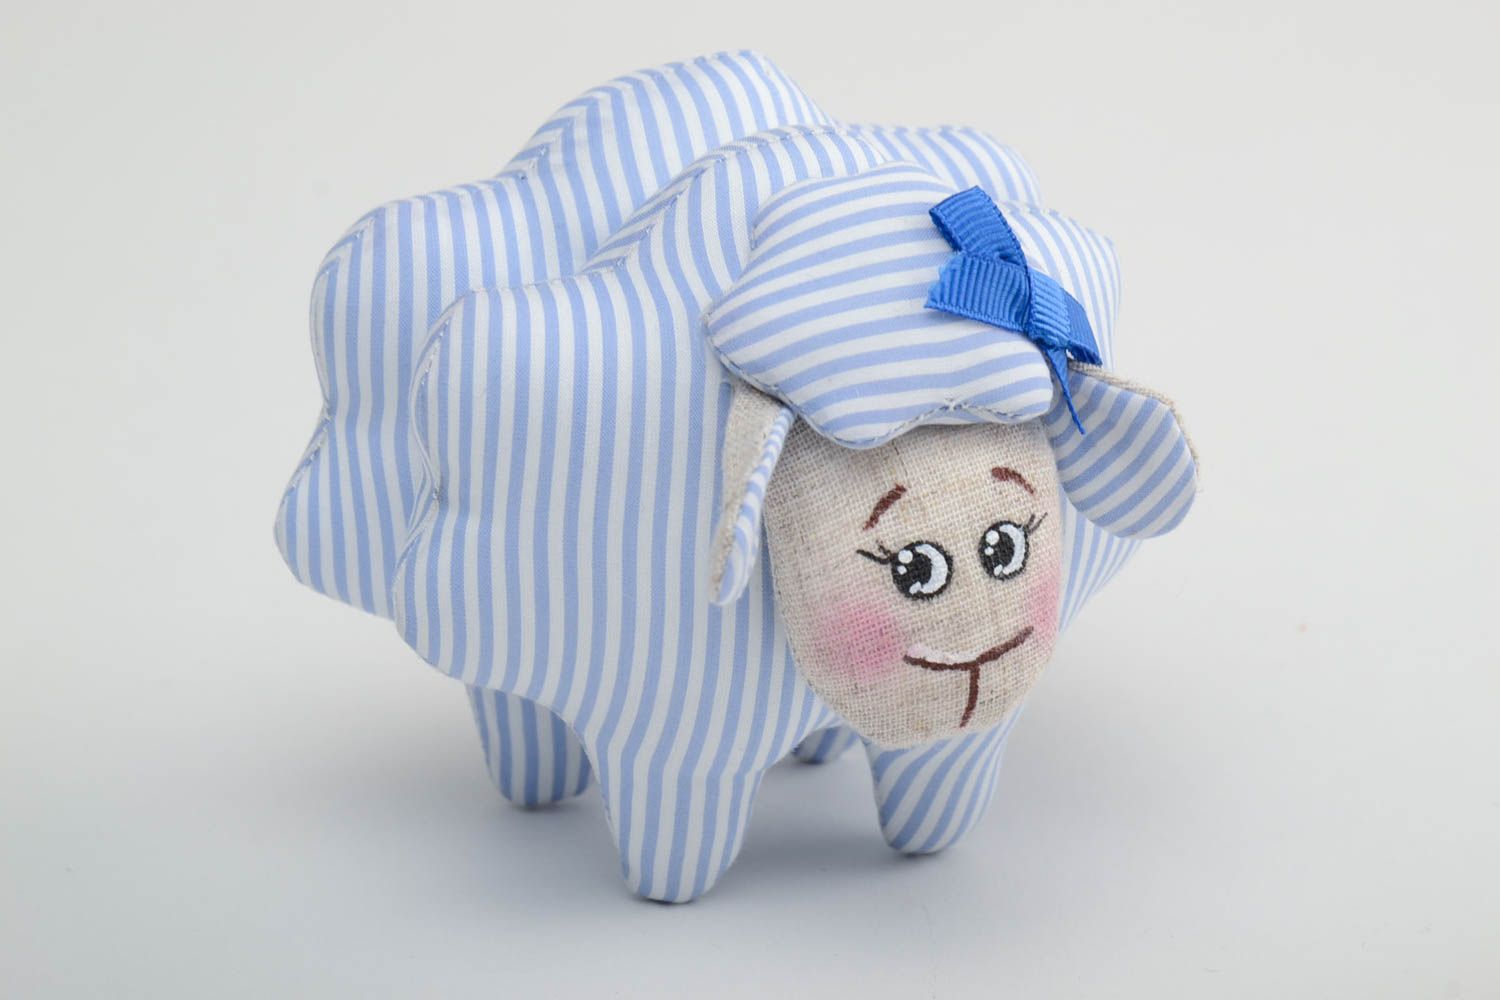 Мягкая тканевая игрушка овечка из льна расписная ручной работы голубая в полоску фото 2